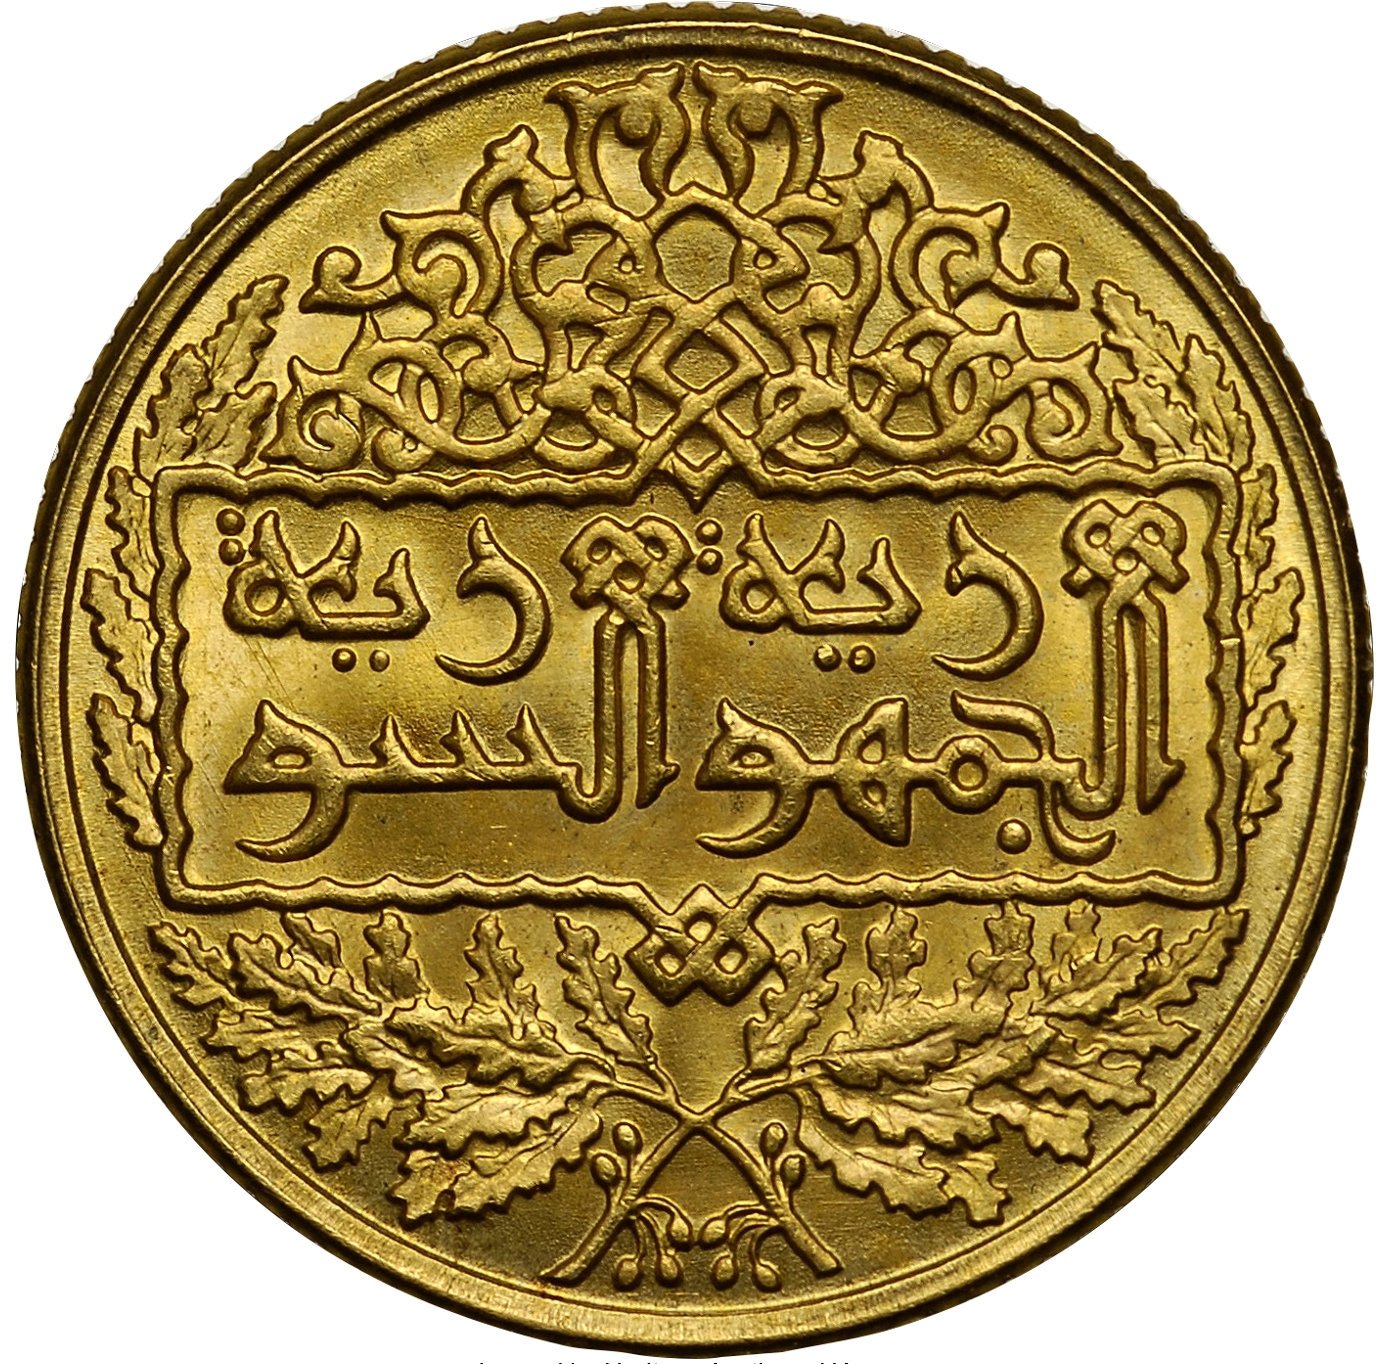 التاريخ السوري المعاصر - النقود والعملات السورية 1950 – ليرة سورية ذهبية